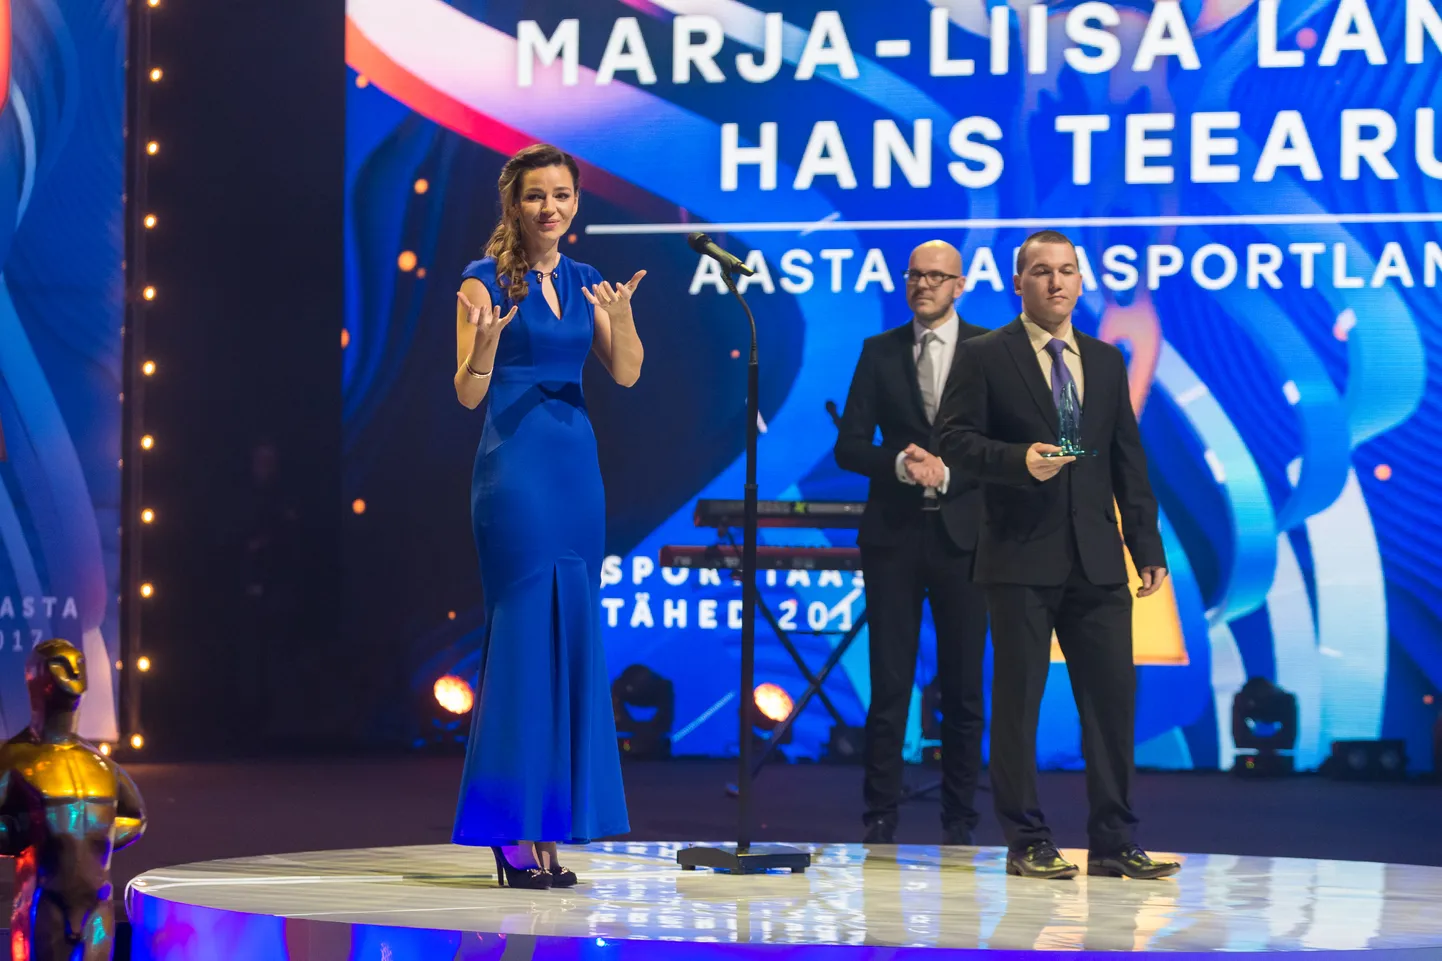 Марья-Лийса Ландар_ церемония награждения звезд спорта, 2017 год.